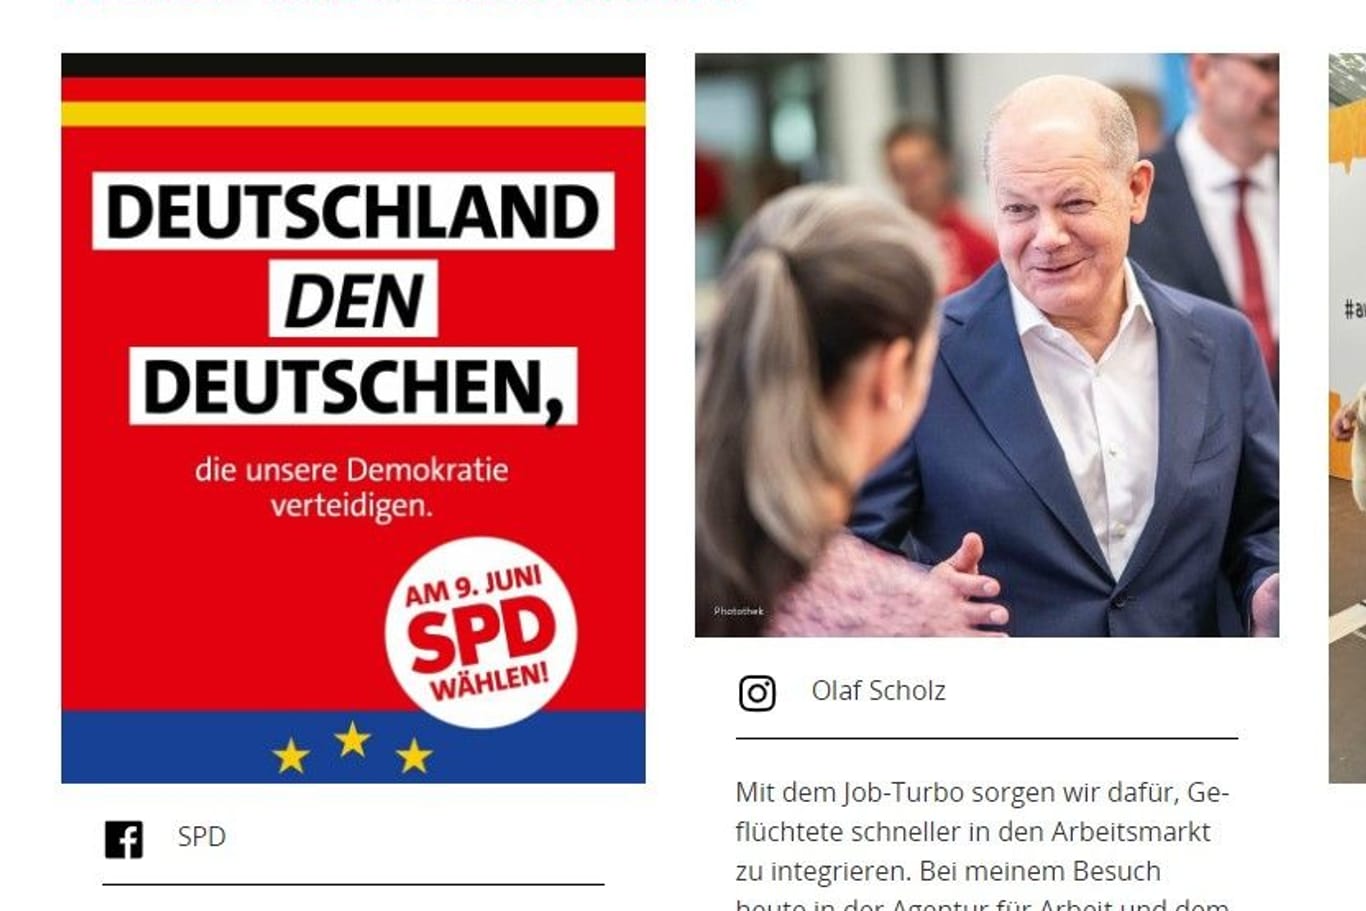 Die Website der SPD: In den sozialen Medien war der Beitrag schnell gelöscht.